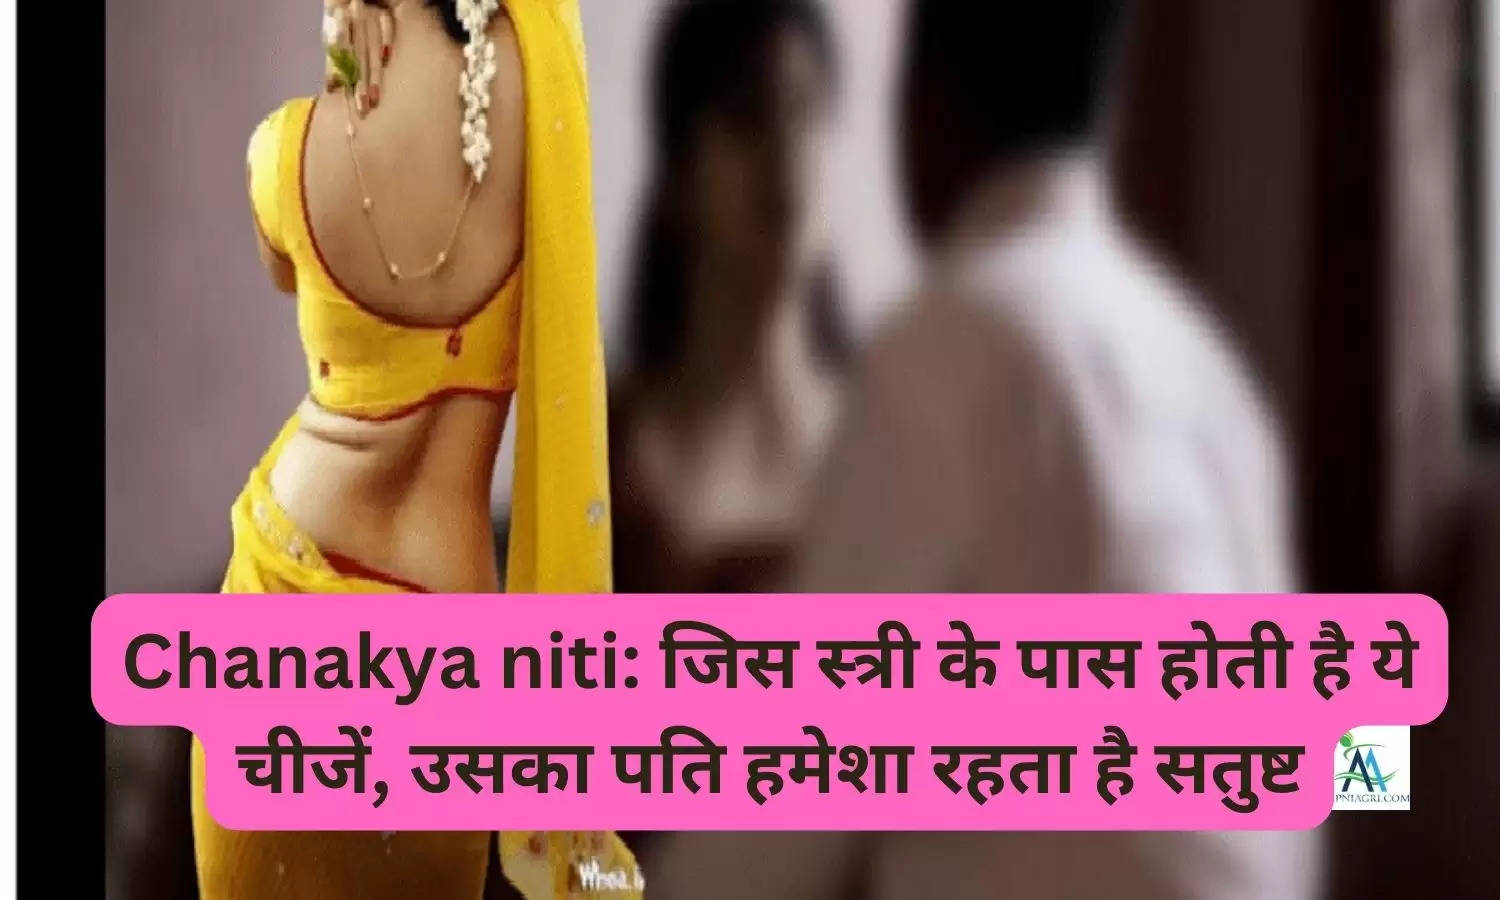 Chanakya niti: जिस स्त्री के पास होती है ये चीजें, उसका पति हमेशा रहता है सतुष्ट